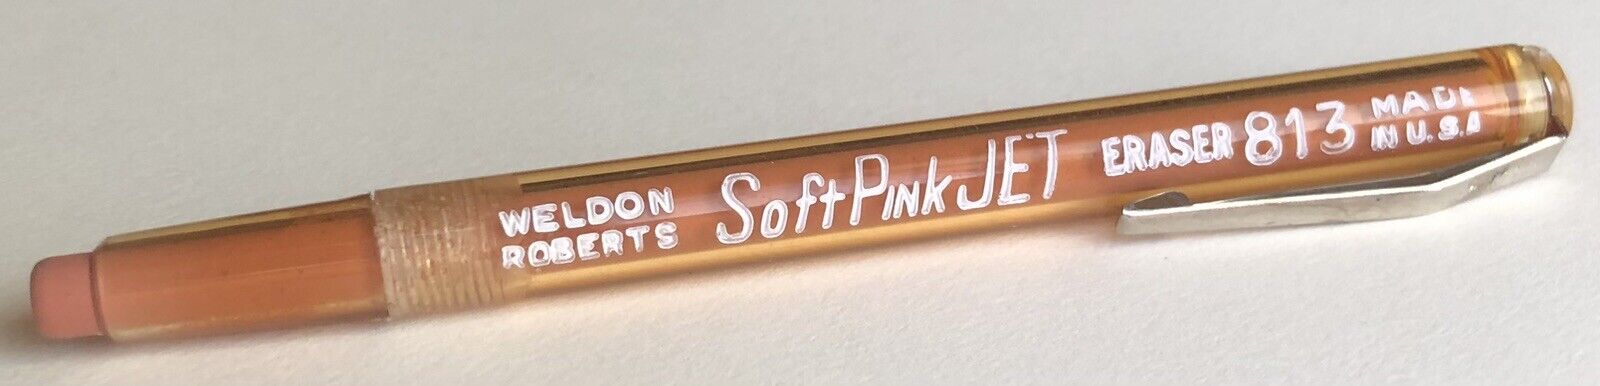 Vintage WELDON ROBERTS Soft Pink Jet Eraser 813 Pocket Clip NOS USA